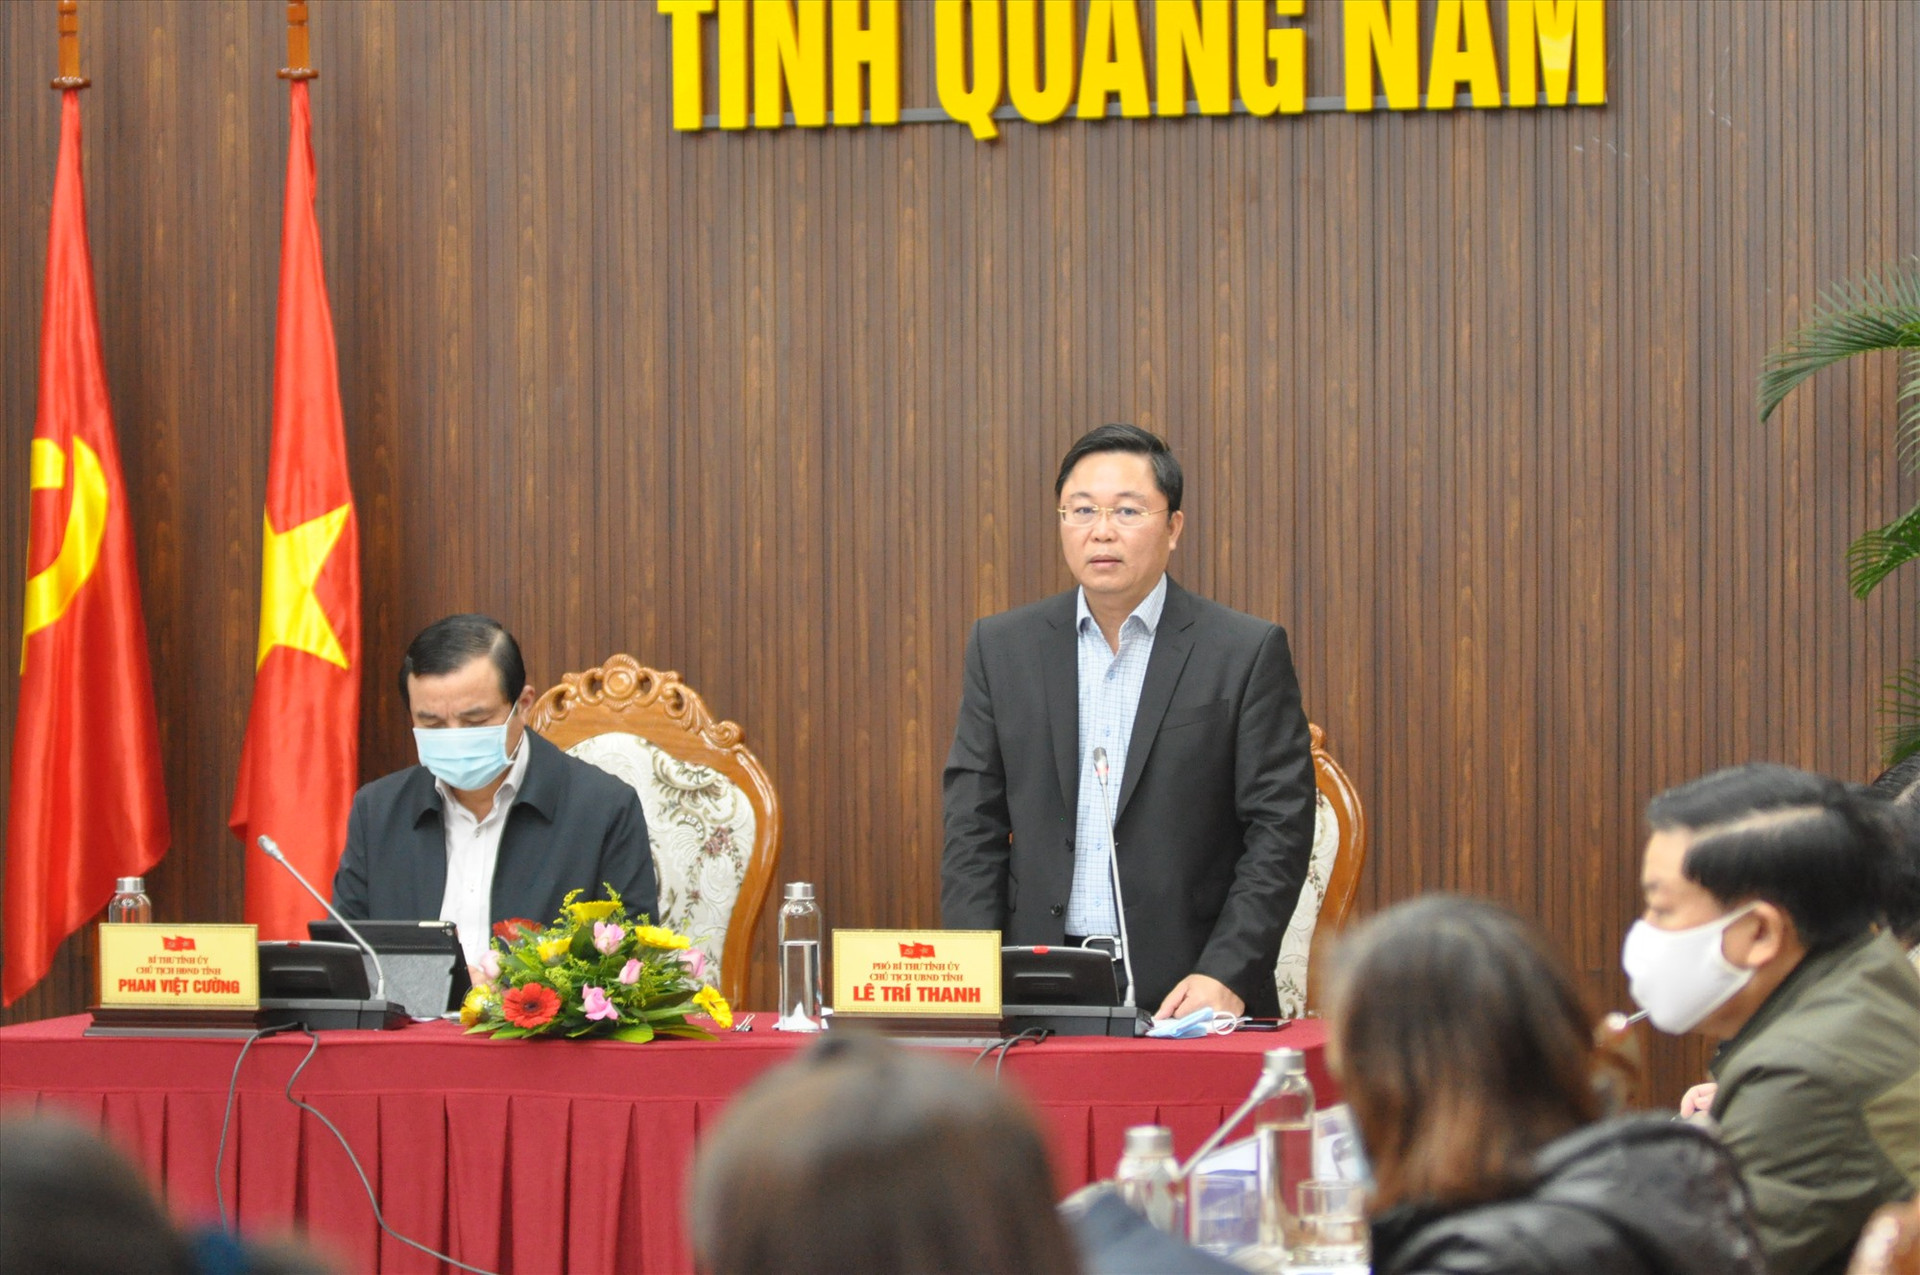 Chủ tịch UBND tỉnh Lê Trí Thanh đánh giá cao nỗ lực của các sở, ngành trong 11 tháng qua. Ảnh: X.P